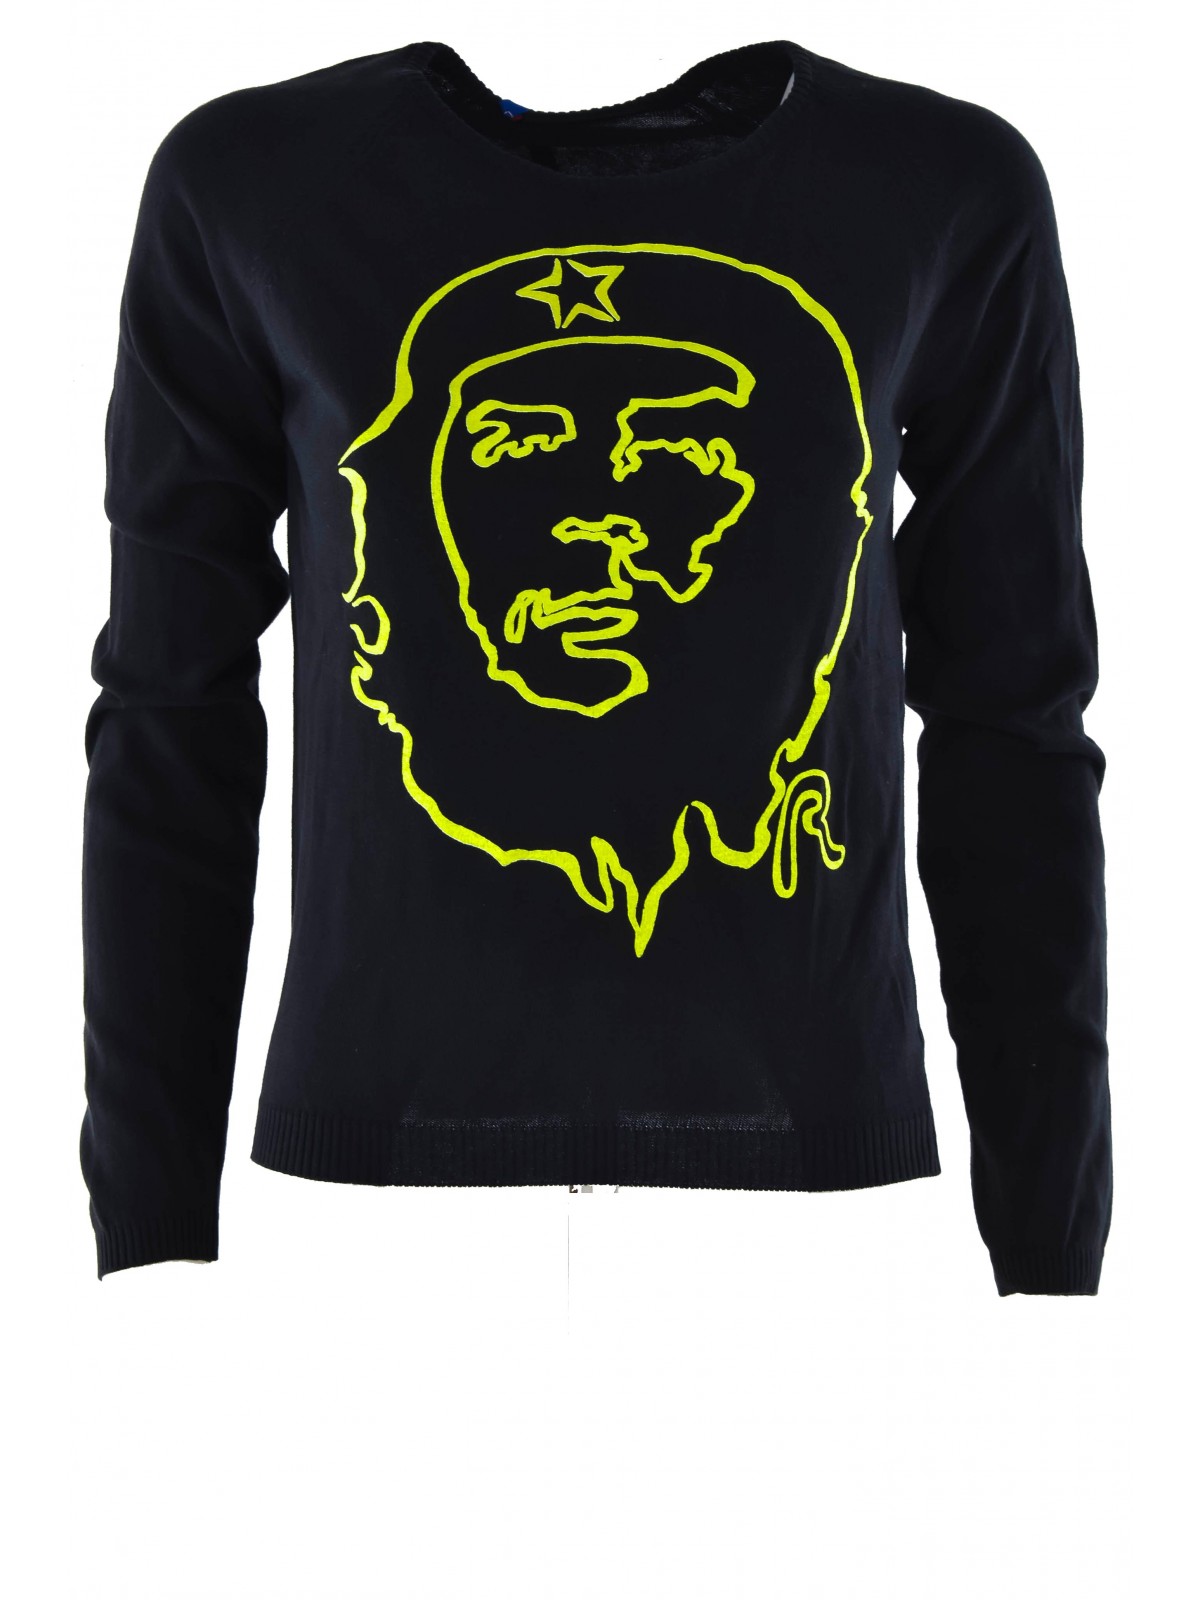 REPLAY Tshirt Manica Lunga Che Guevara Nero